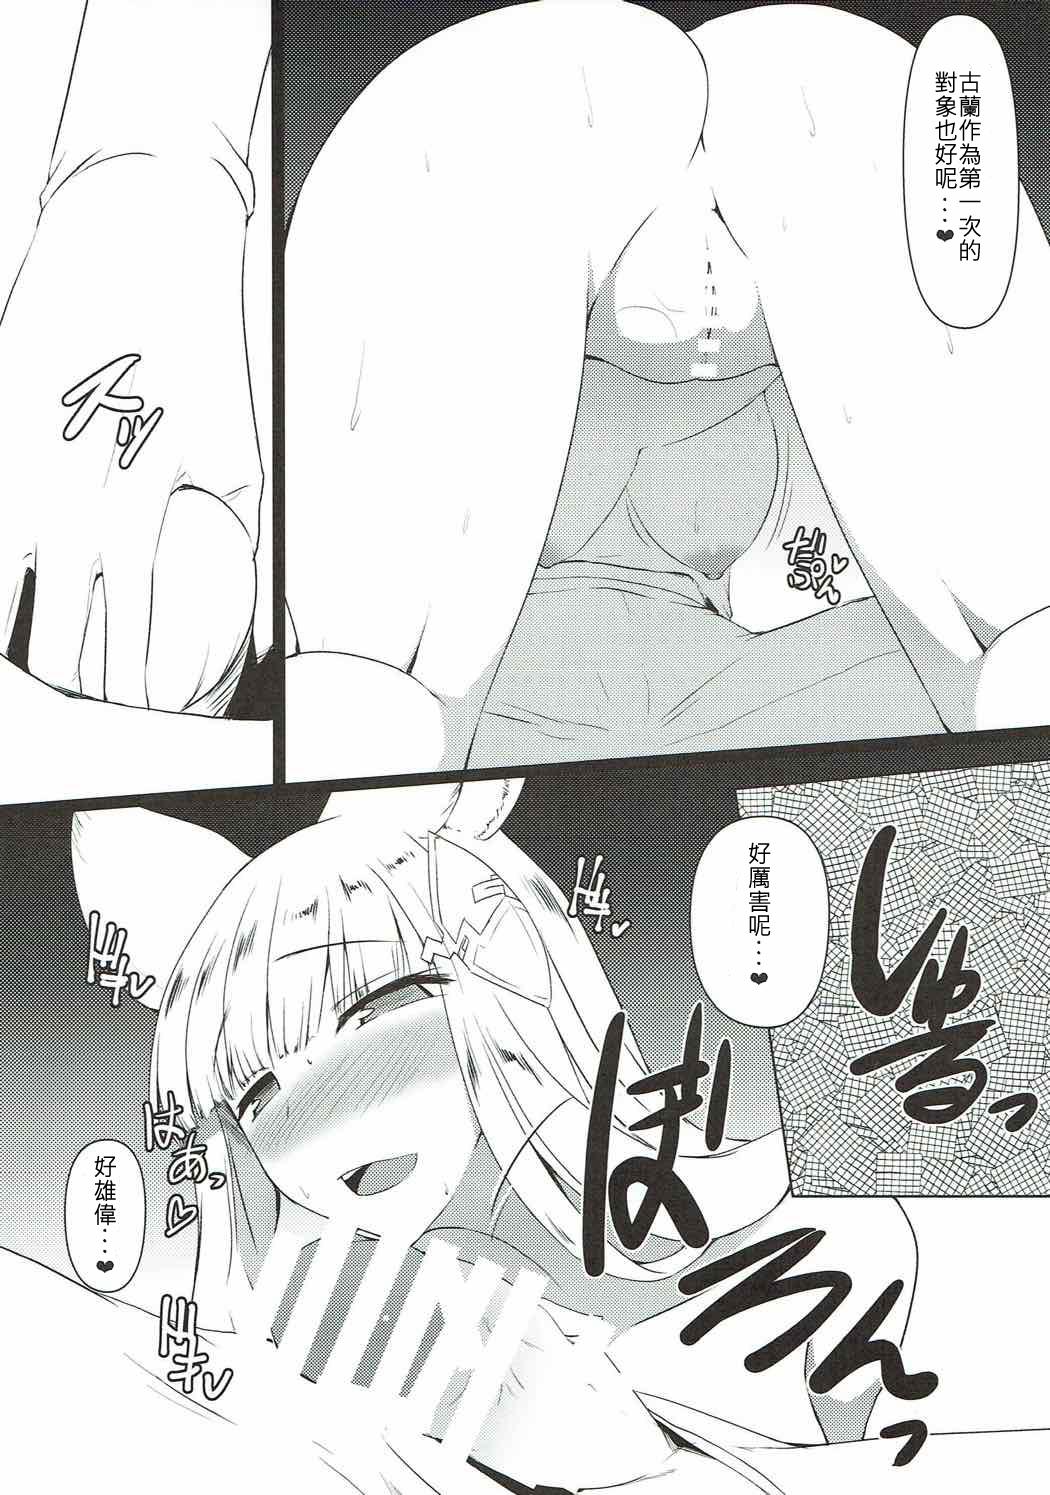 Ass Jibaku desu yo!! Korwa-san! - Granblue fantasy Mamada - Page 5